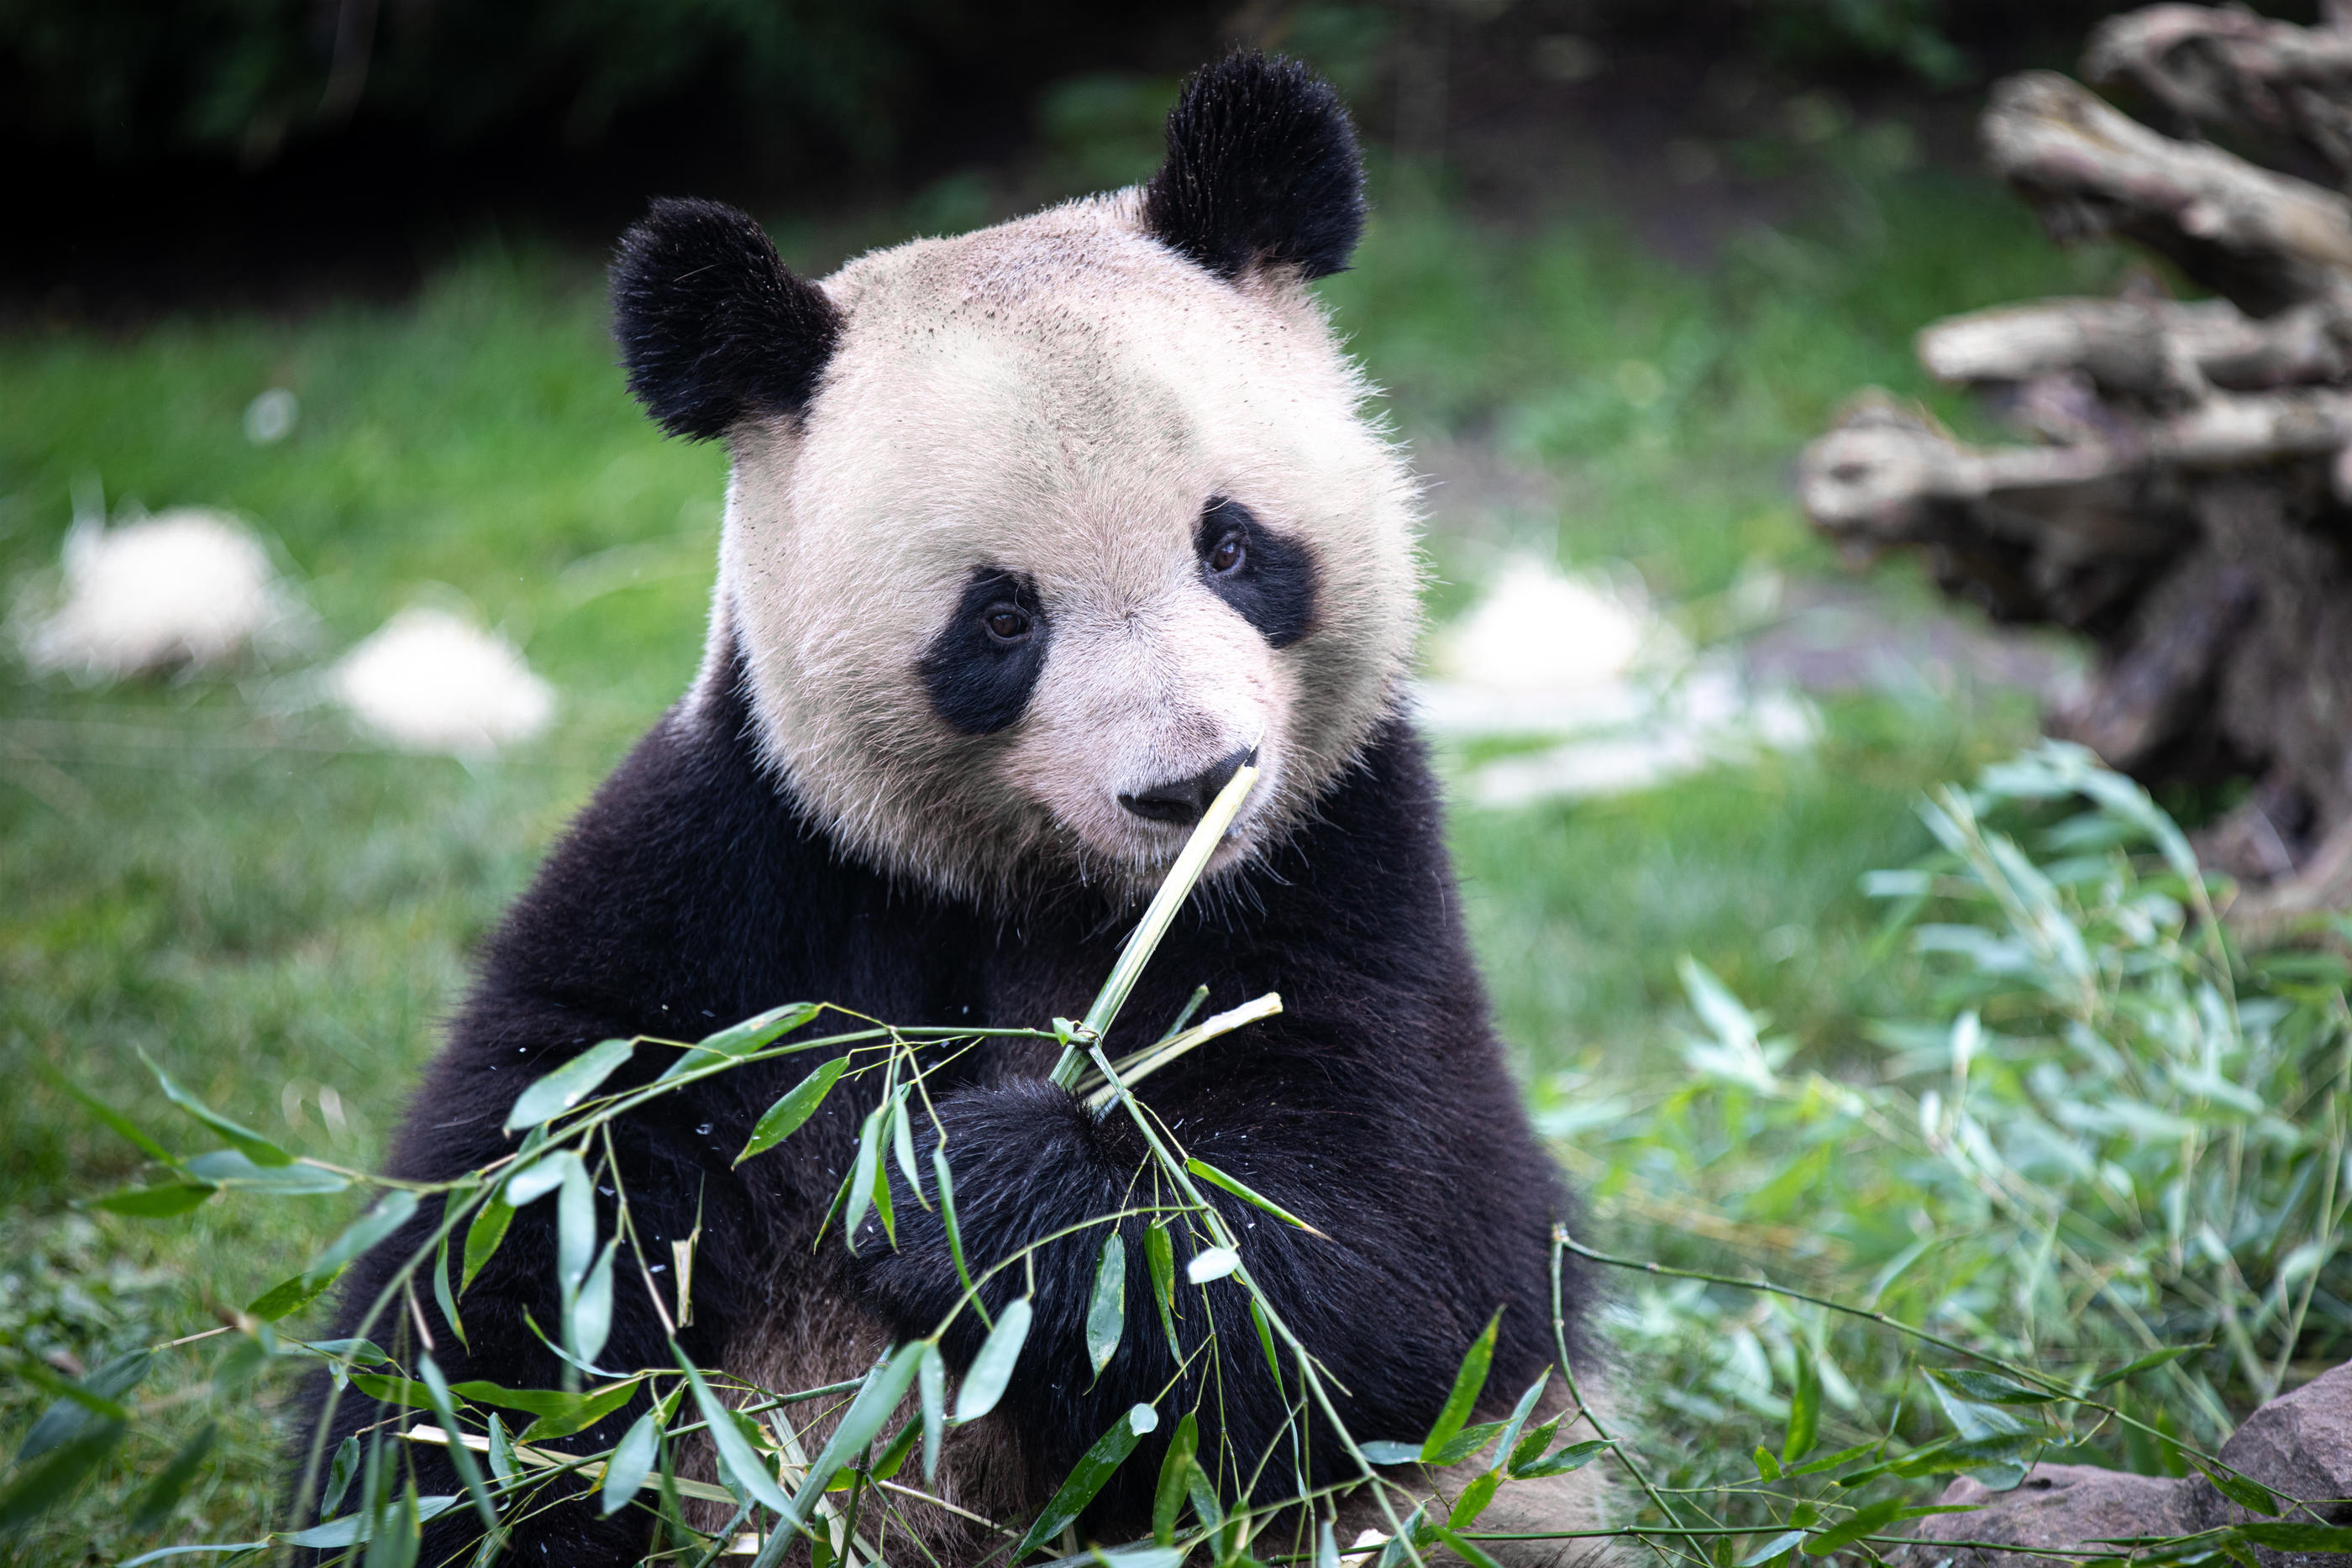 Yuan Meng va bientôt quitter le zoo de Beauval pour la Chine. ZooParc de Beauval